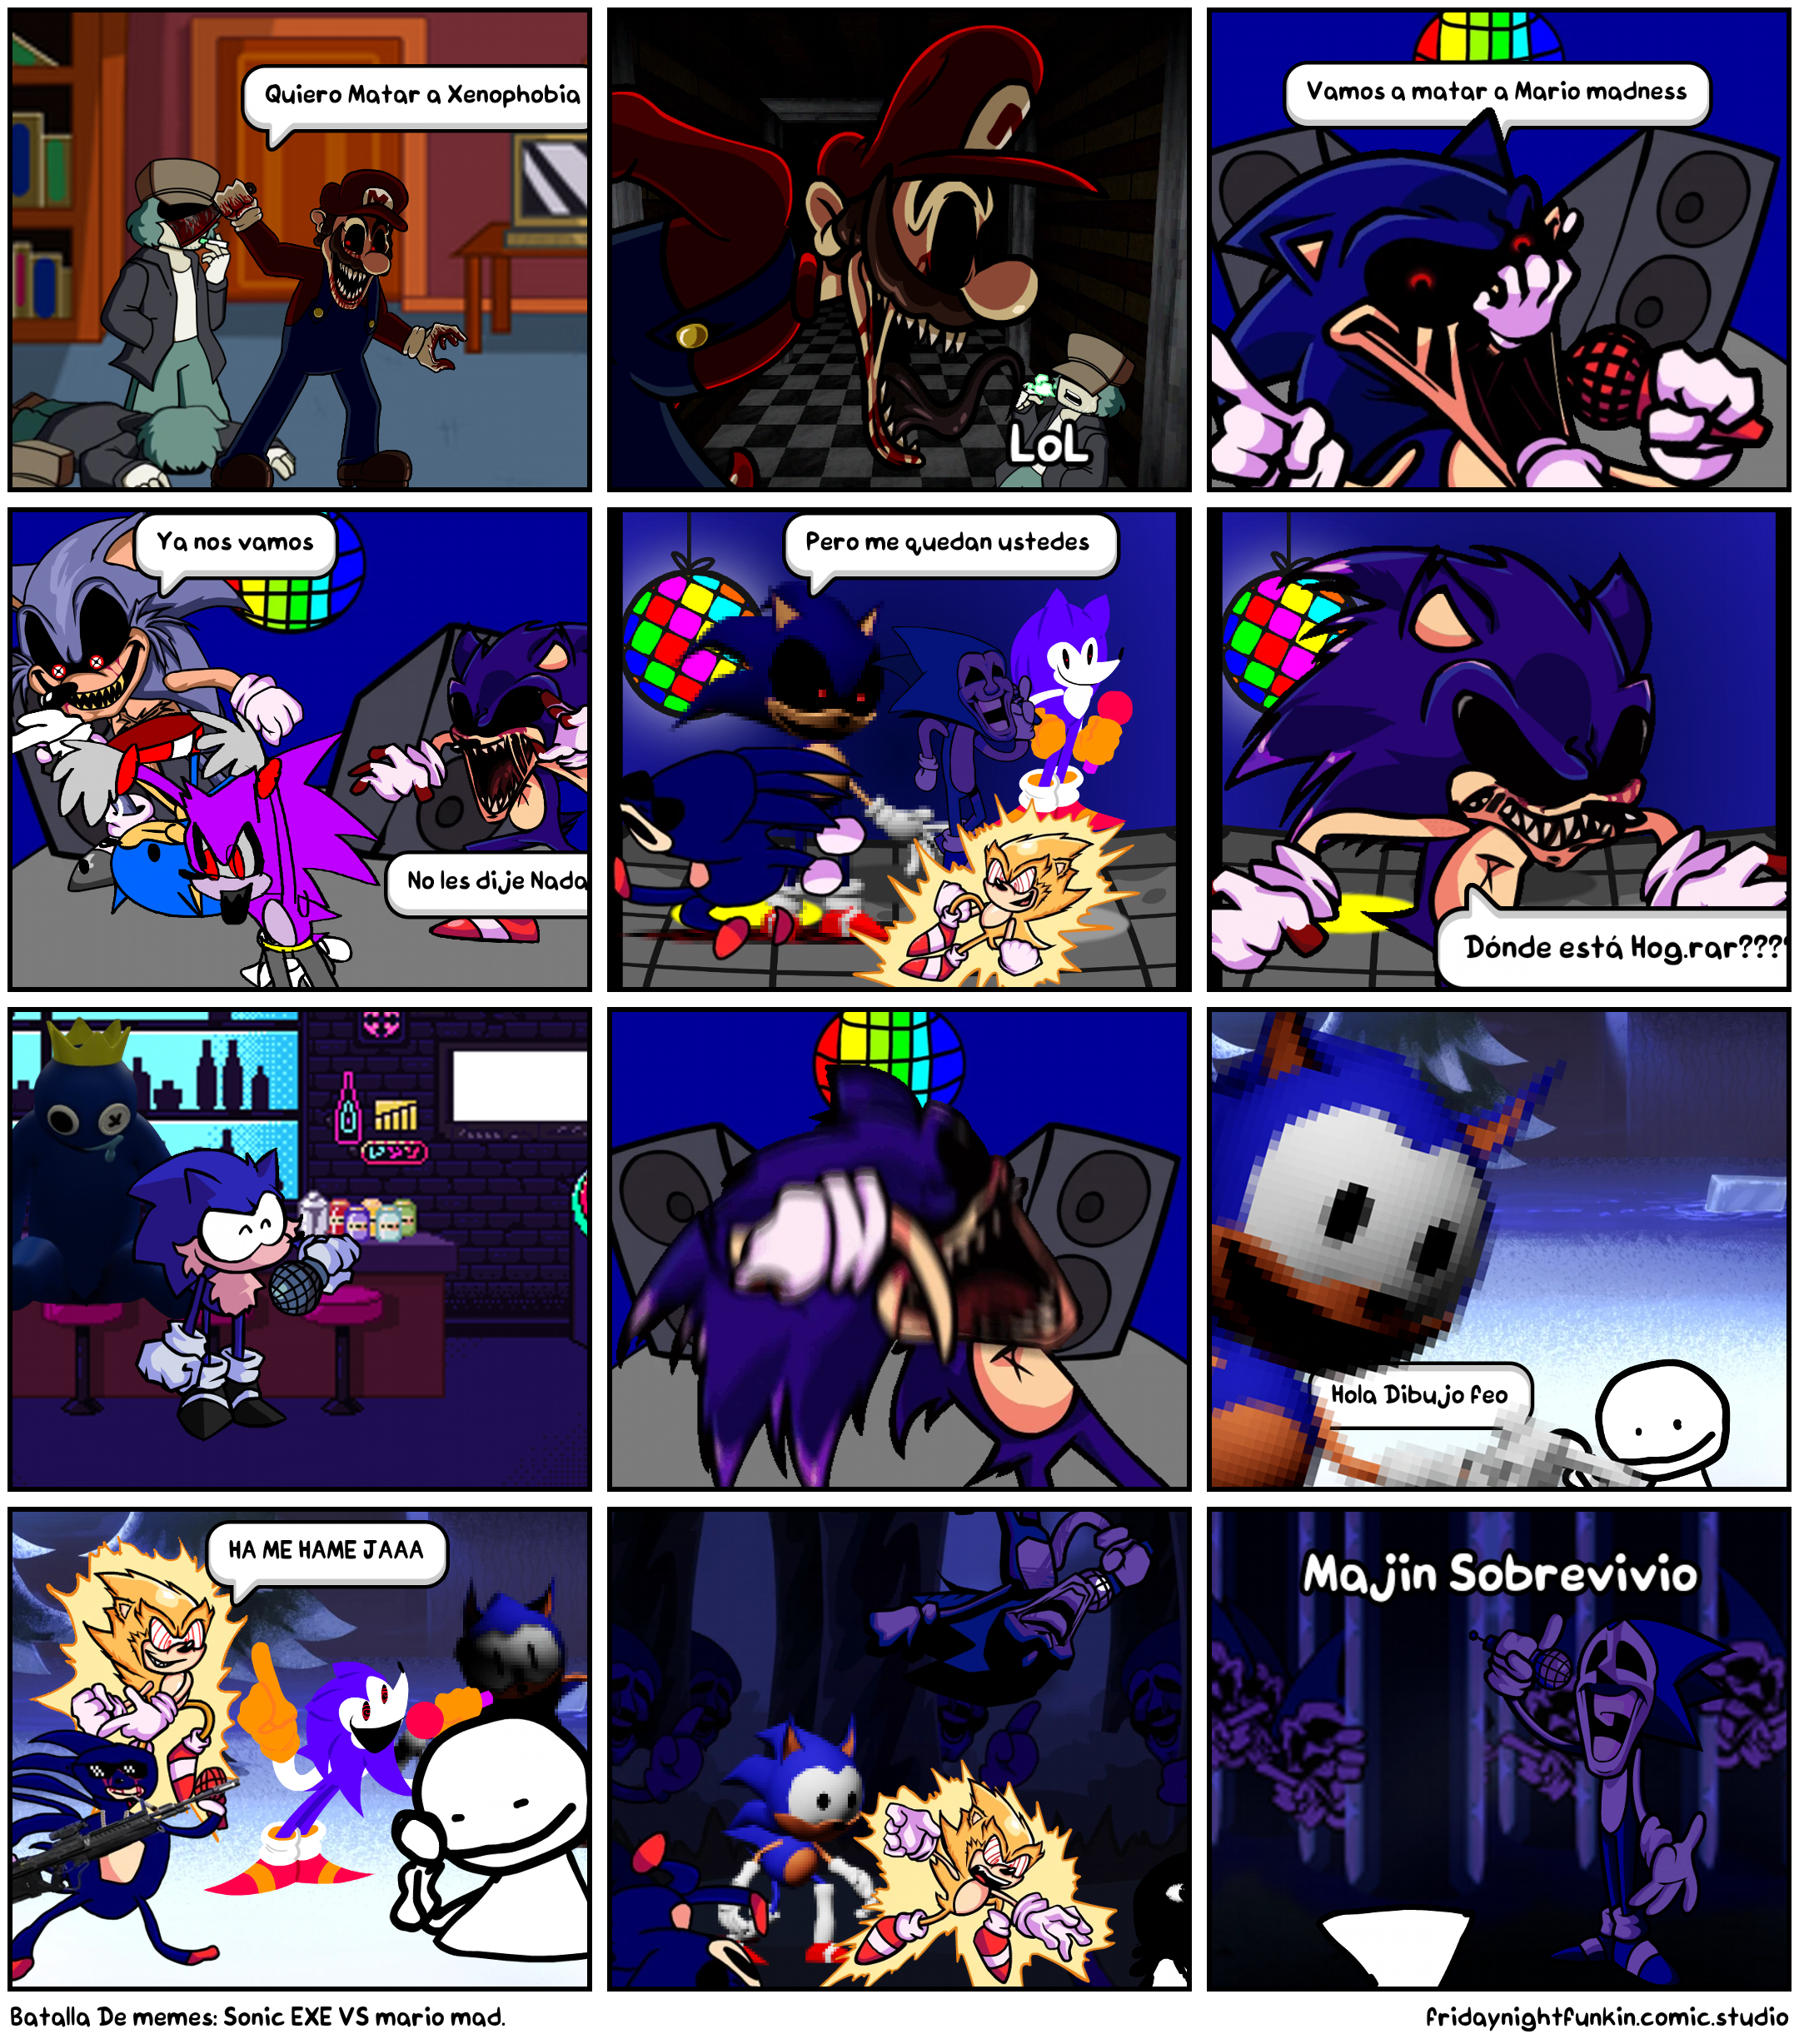 Batalla De memes: Sonic EXE VS mario mad.